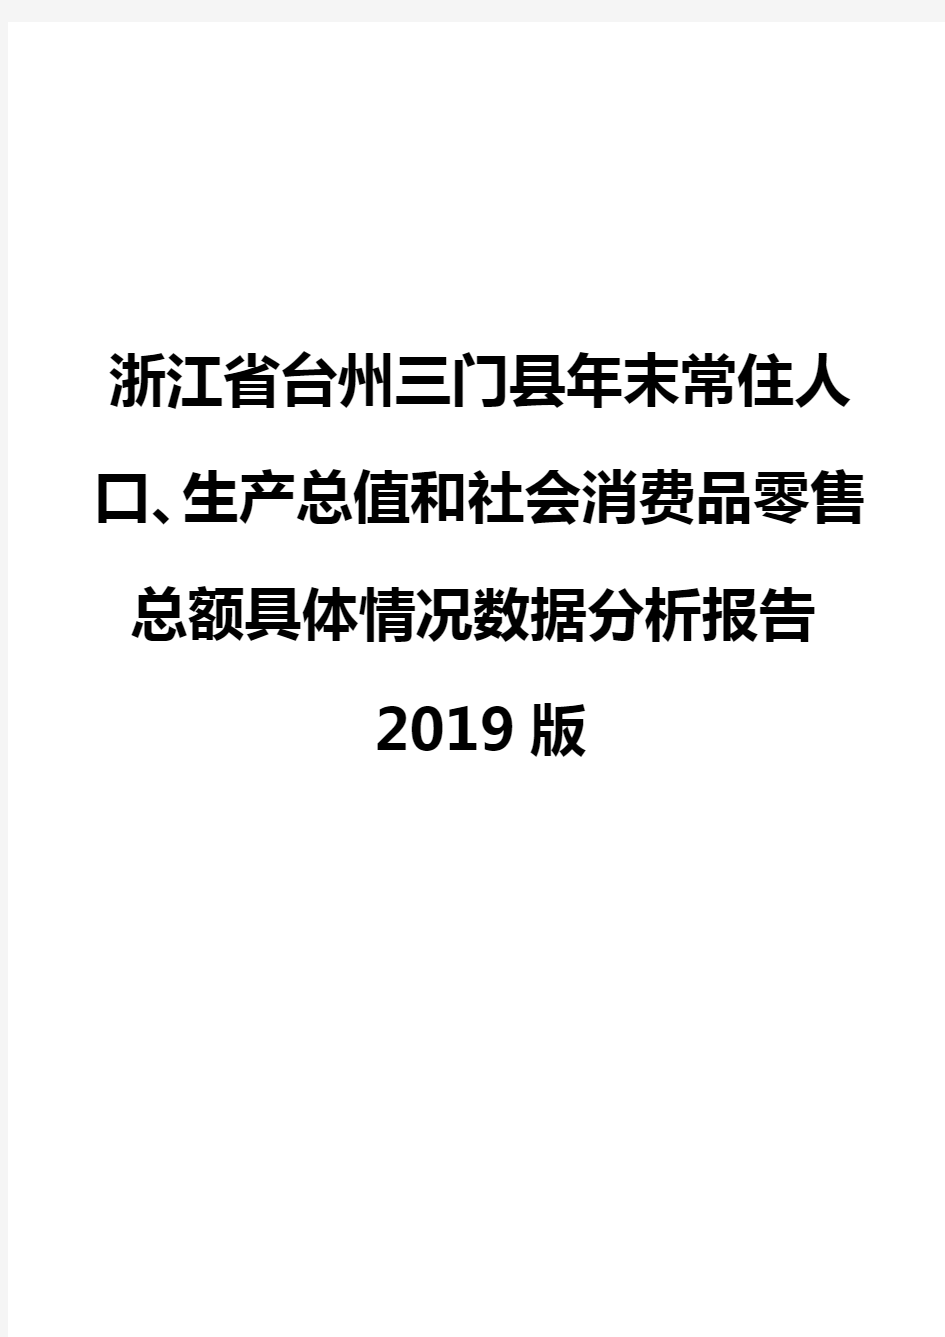 浙江省台州三门县年末常住人口、生产总值和社会消费品零售总额具体情况数据分析报告2019版